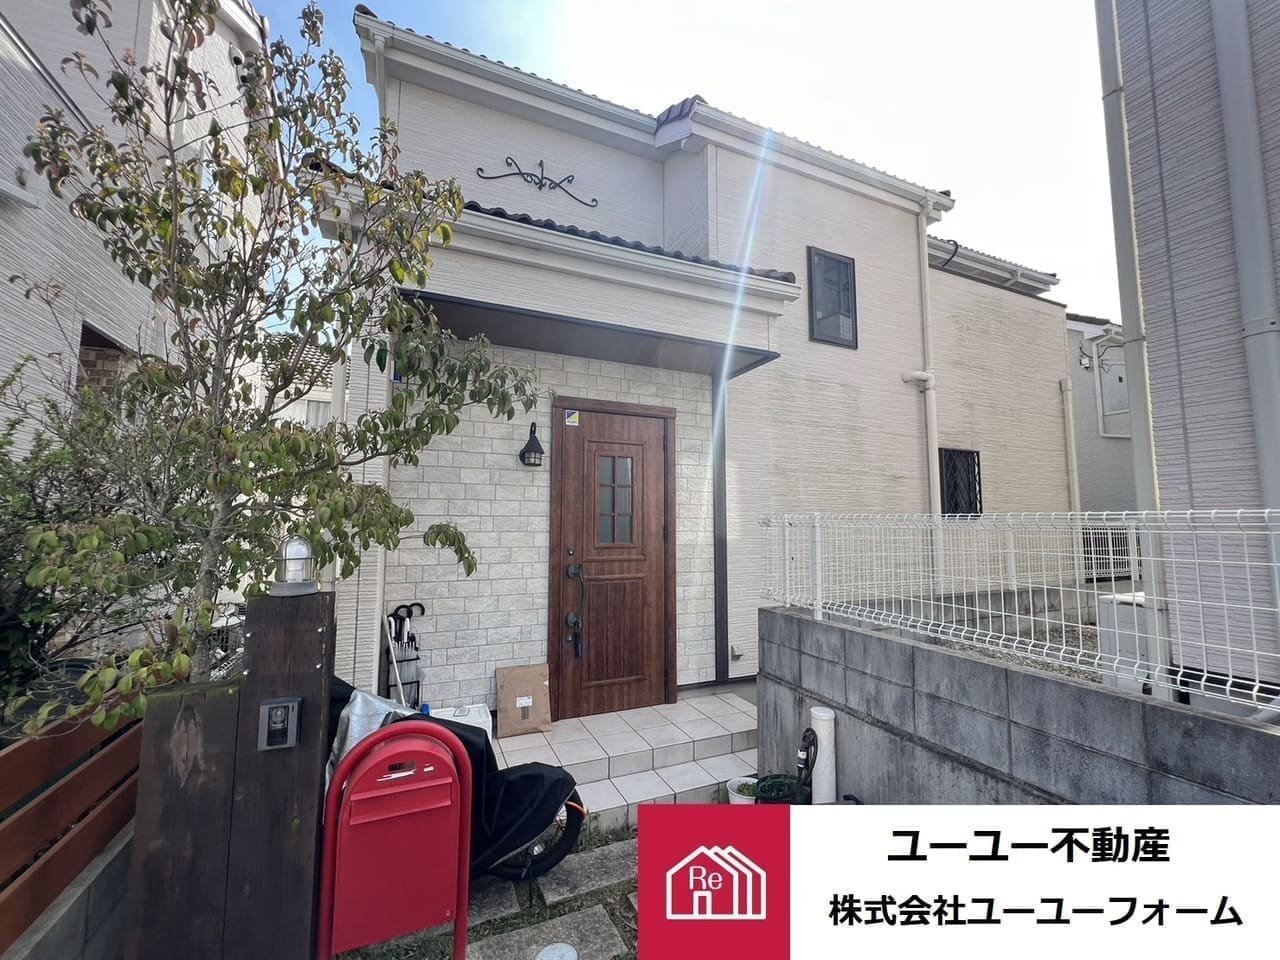 ユーユー不動産が売却依頼を受けた神戸市西区の中古戸建